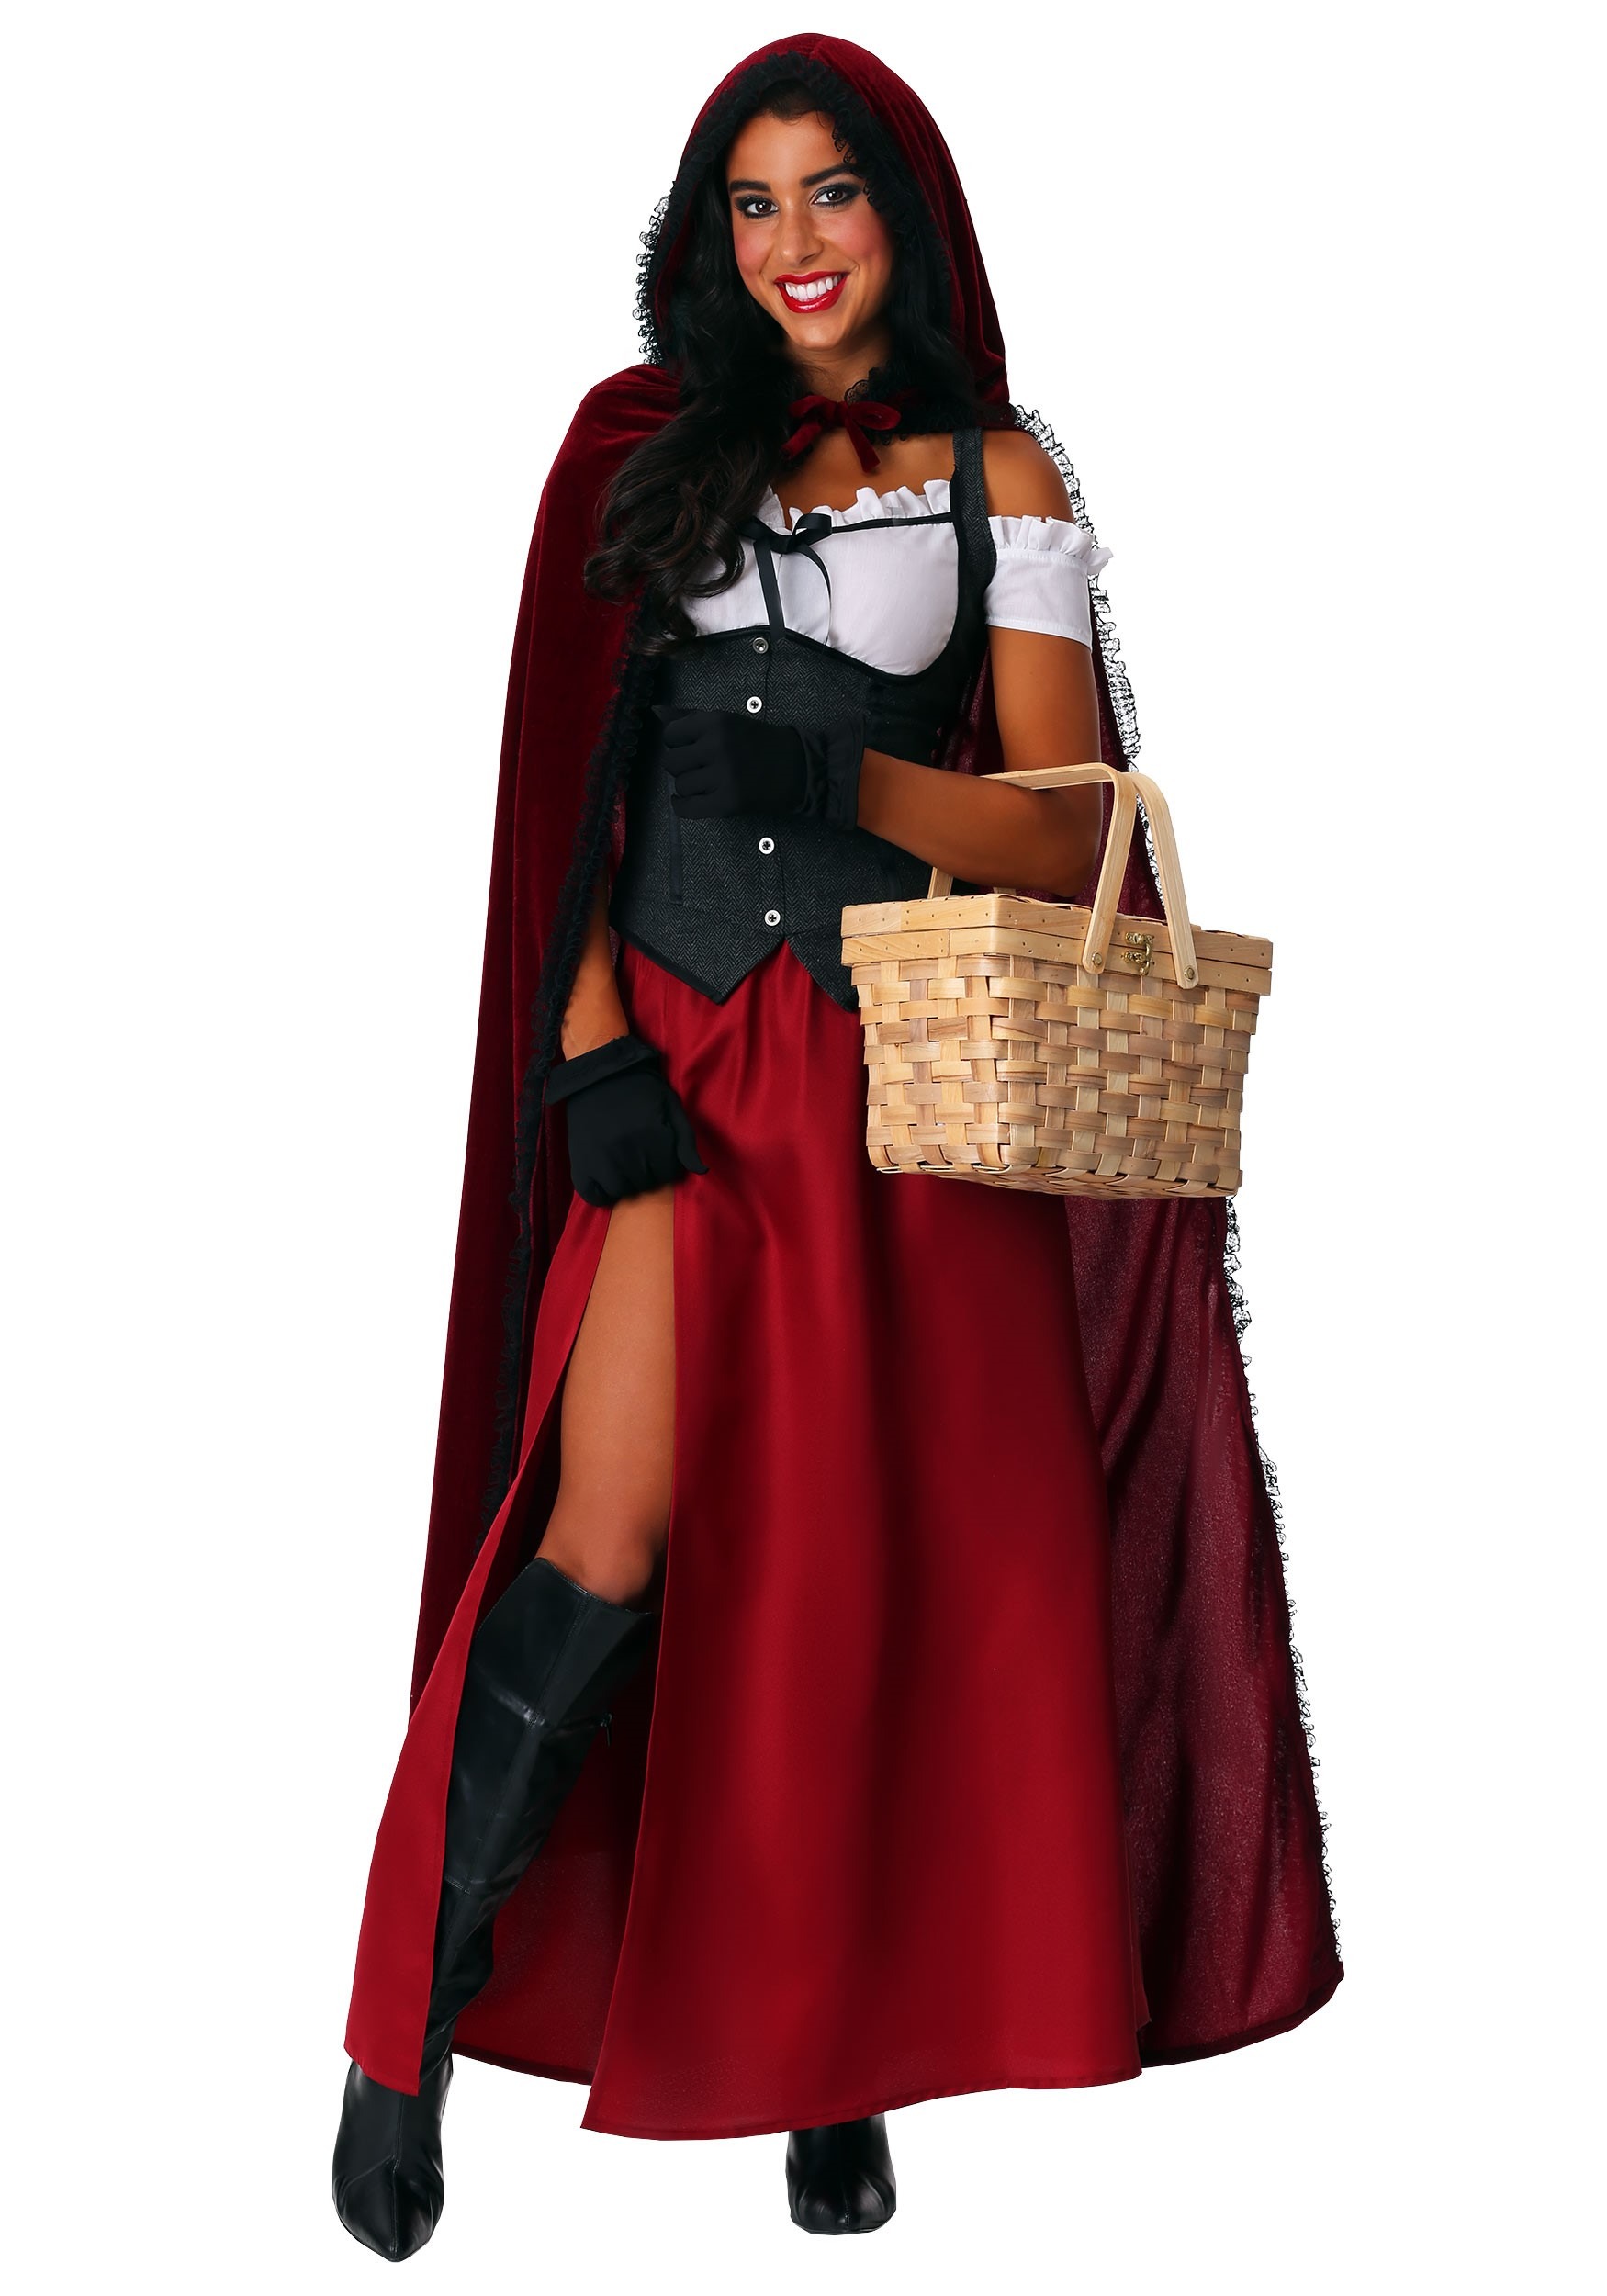 Womens Ravishing Red Riding Hood Costume